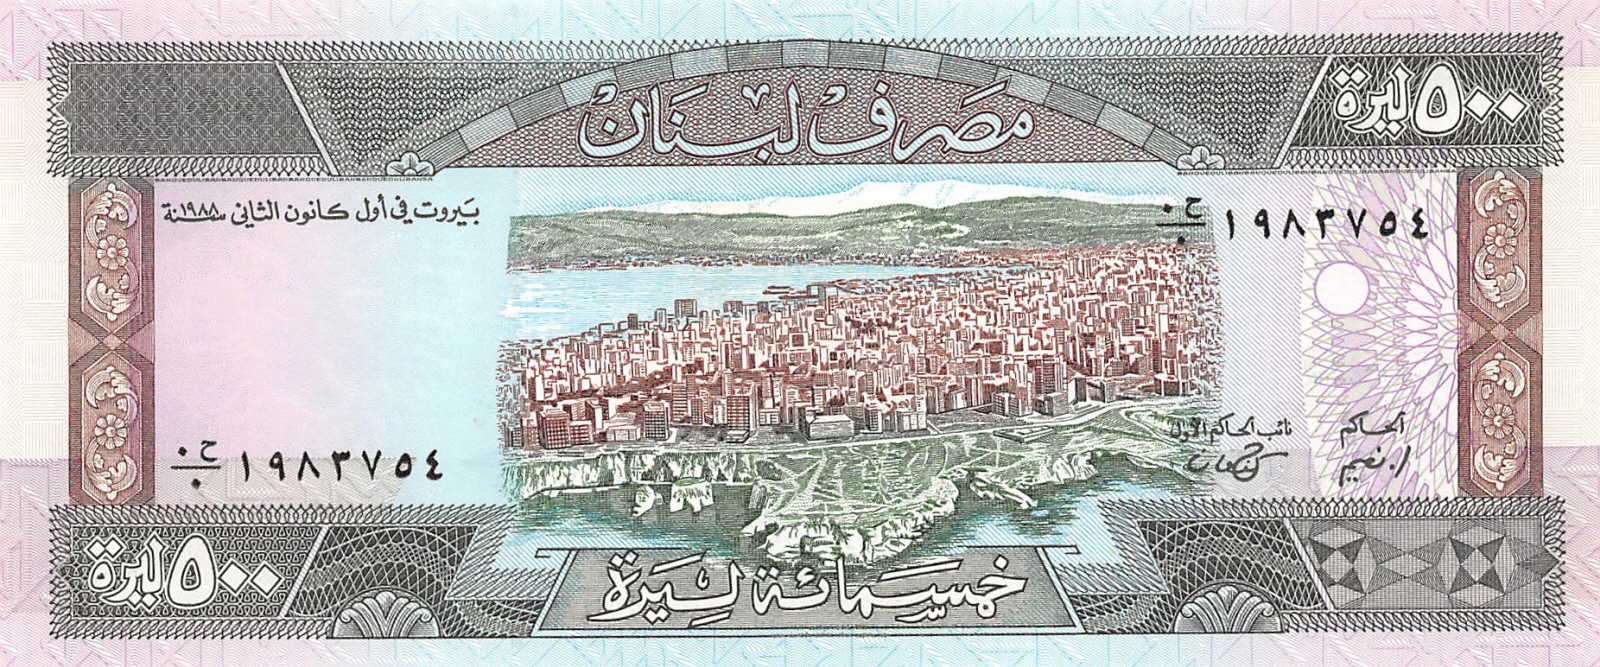 LEBANON 500 LIVRES 1988 P 68 UNC